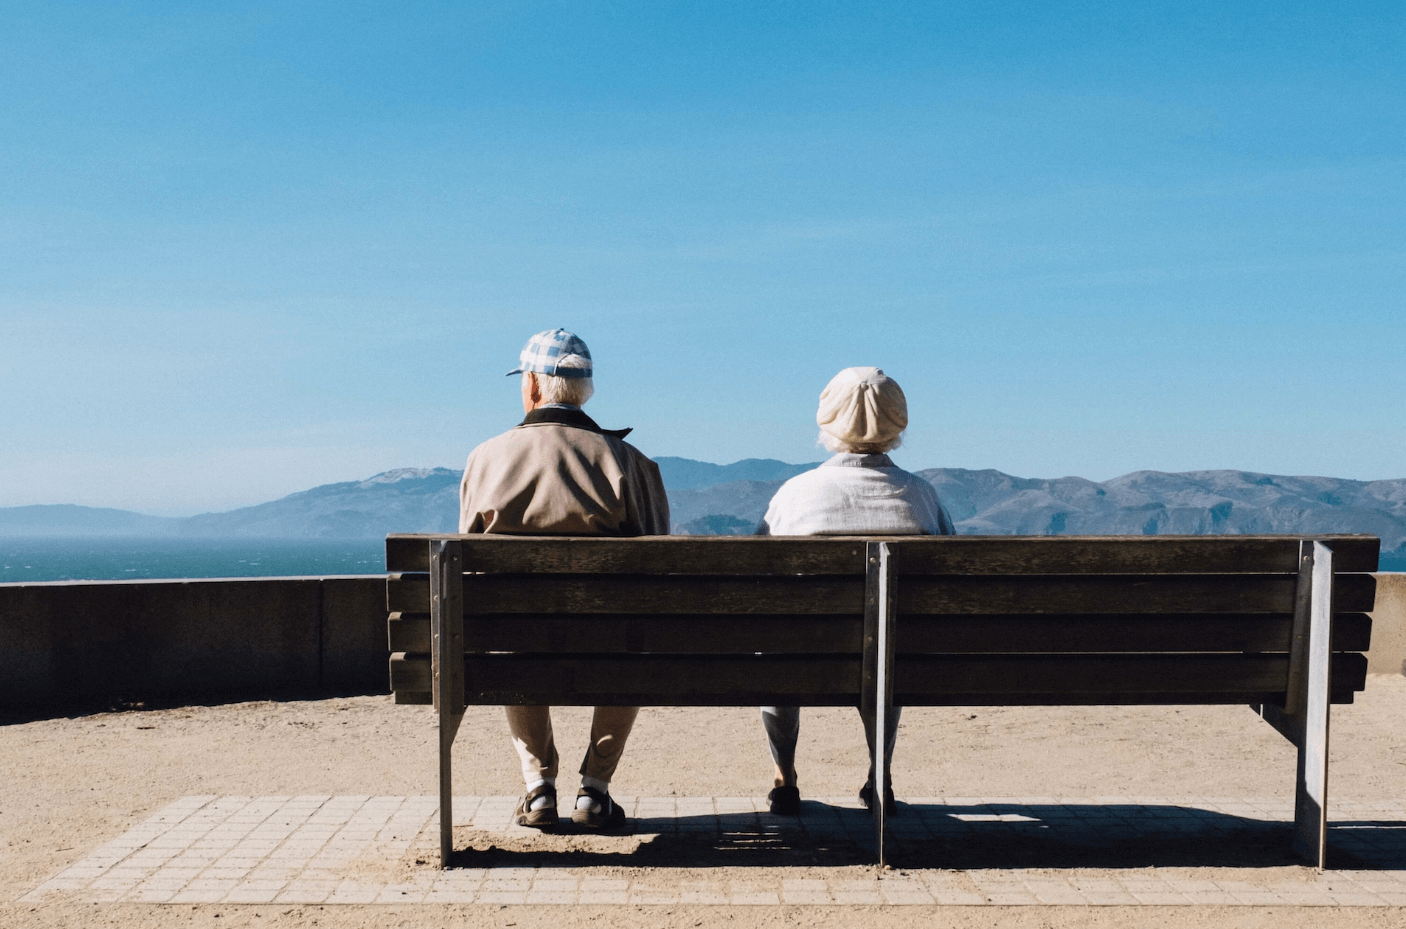 aelteres Paar sitz auf einer Bank und schaut auf das Meer.